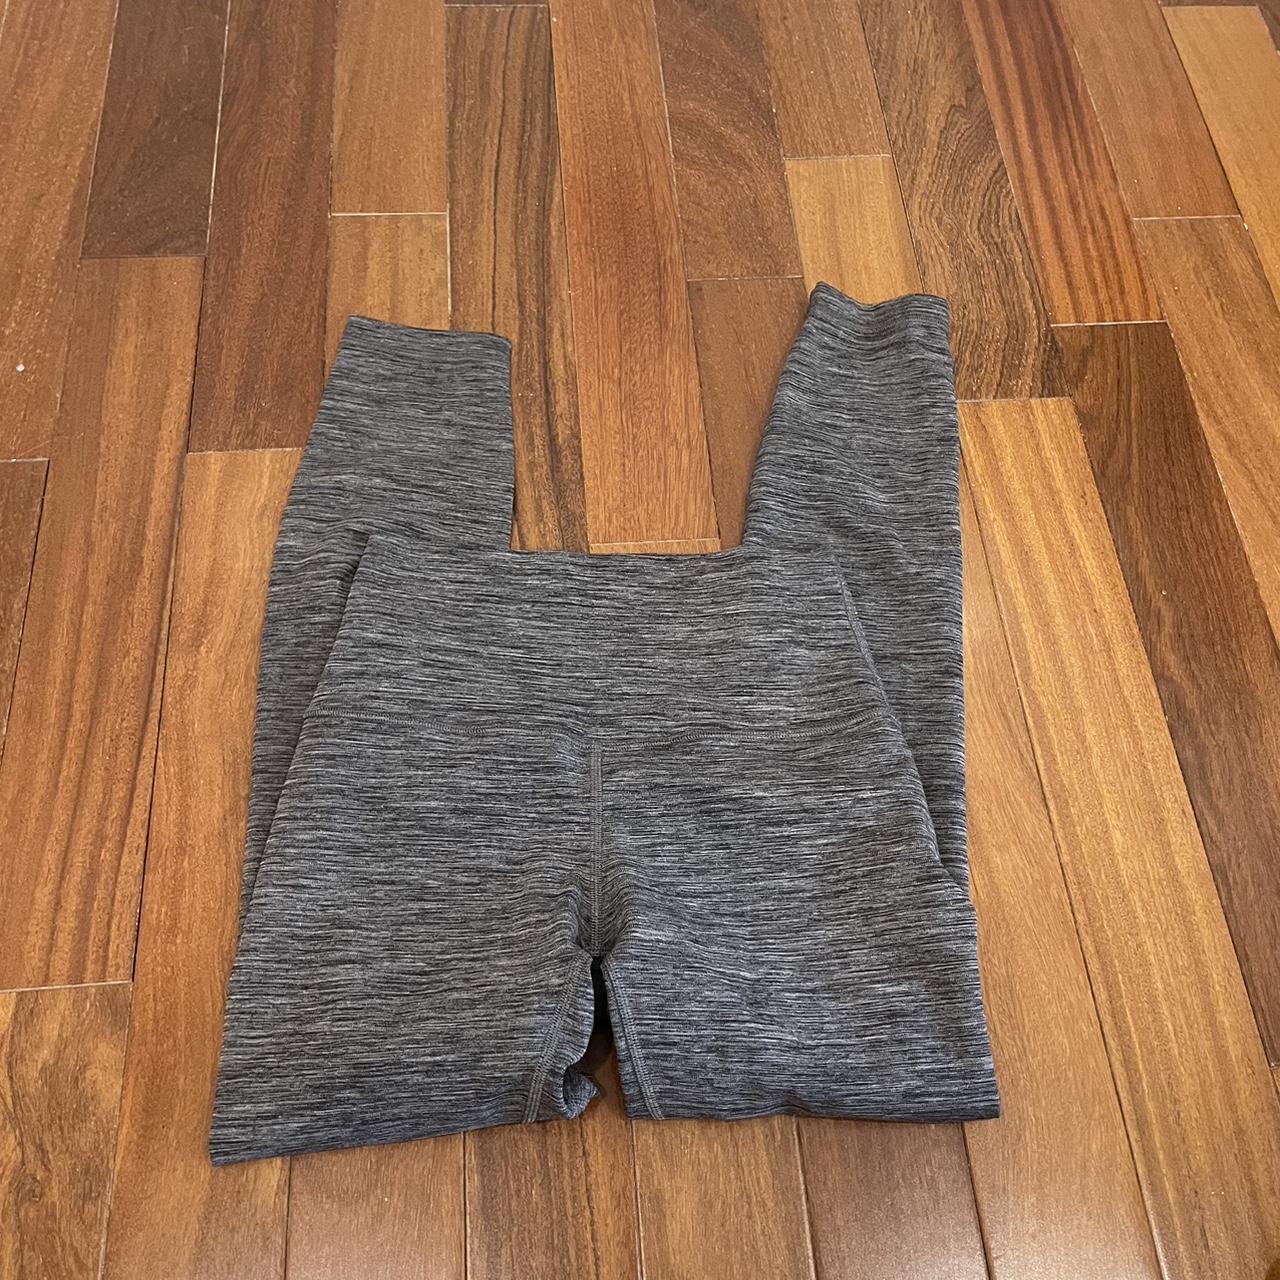 lululemon heather grey 25' align leggings. color no - Depop